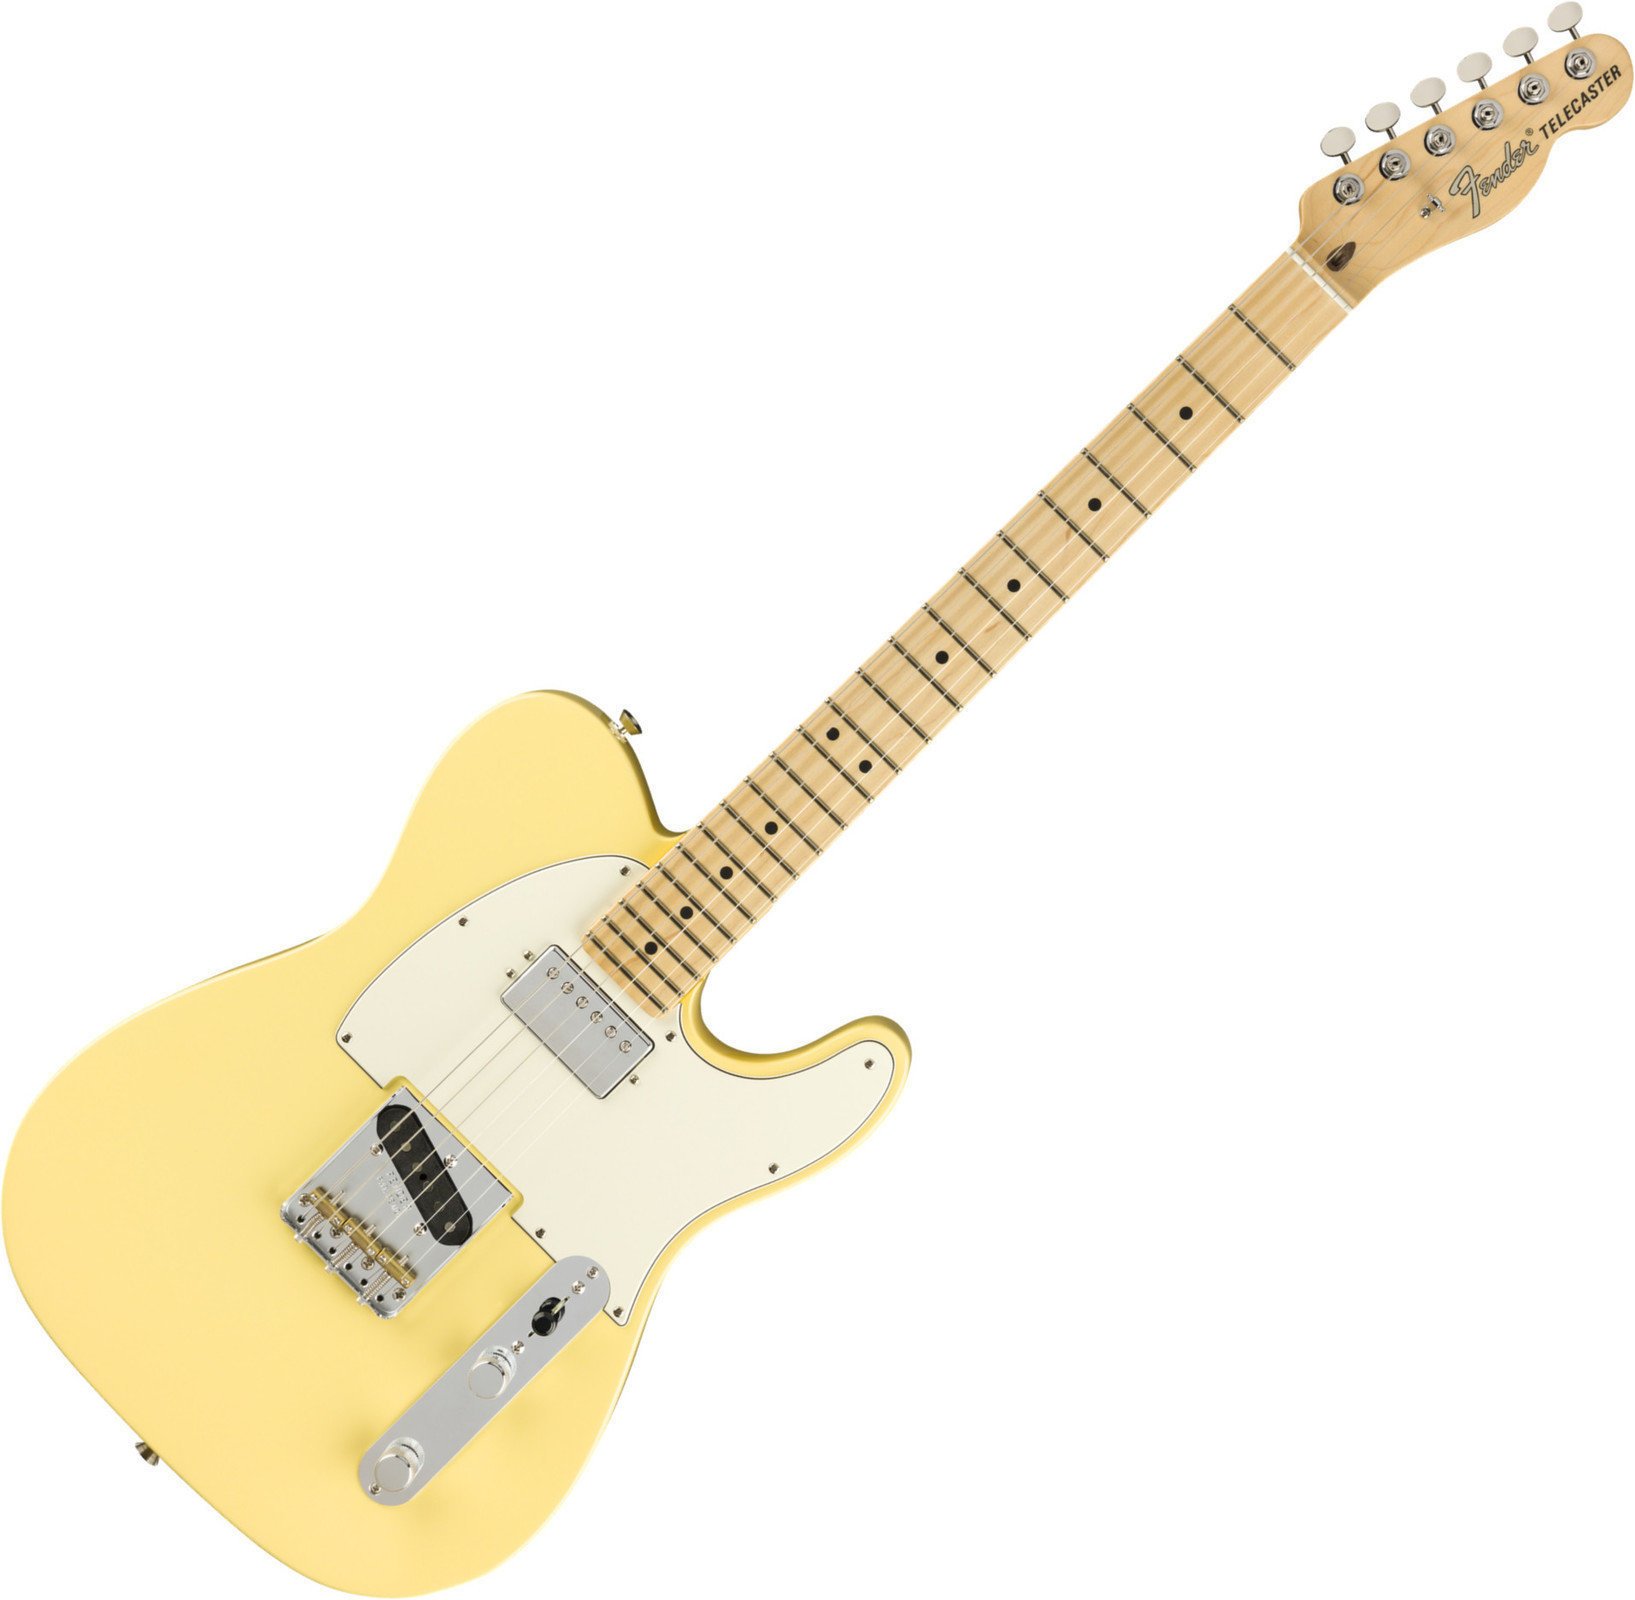 Fender American Performer Telecaster HUM MN Vintage White Fender